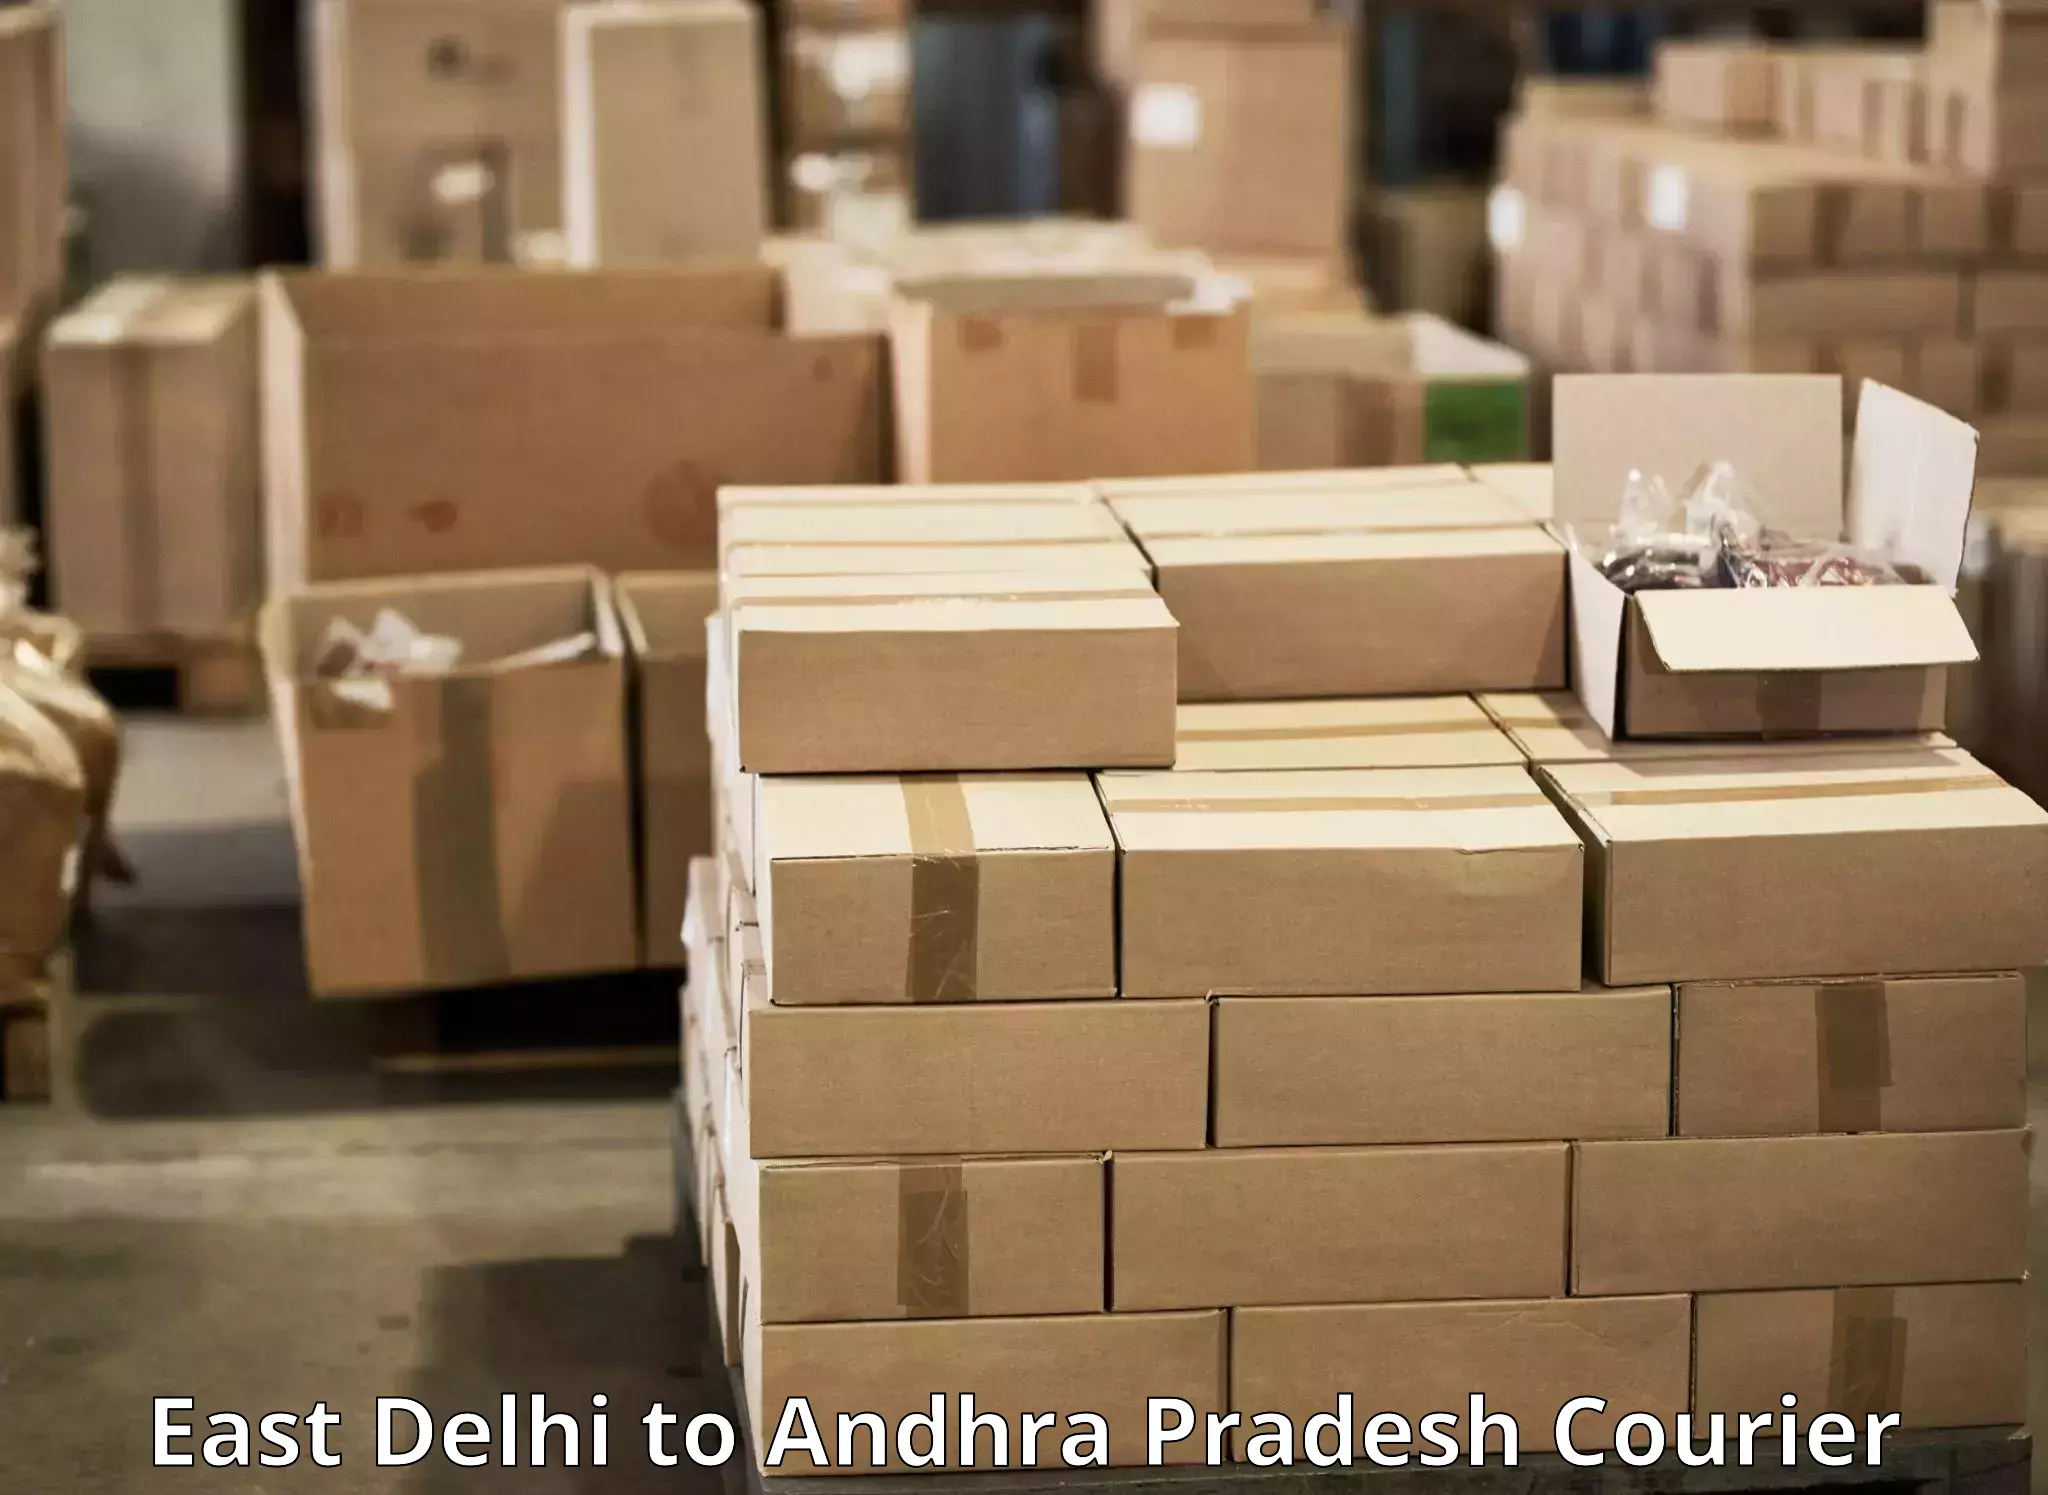 Efficient parcel service East Delhi to Jaggayyapet